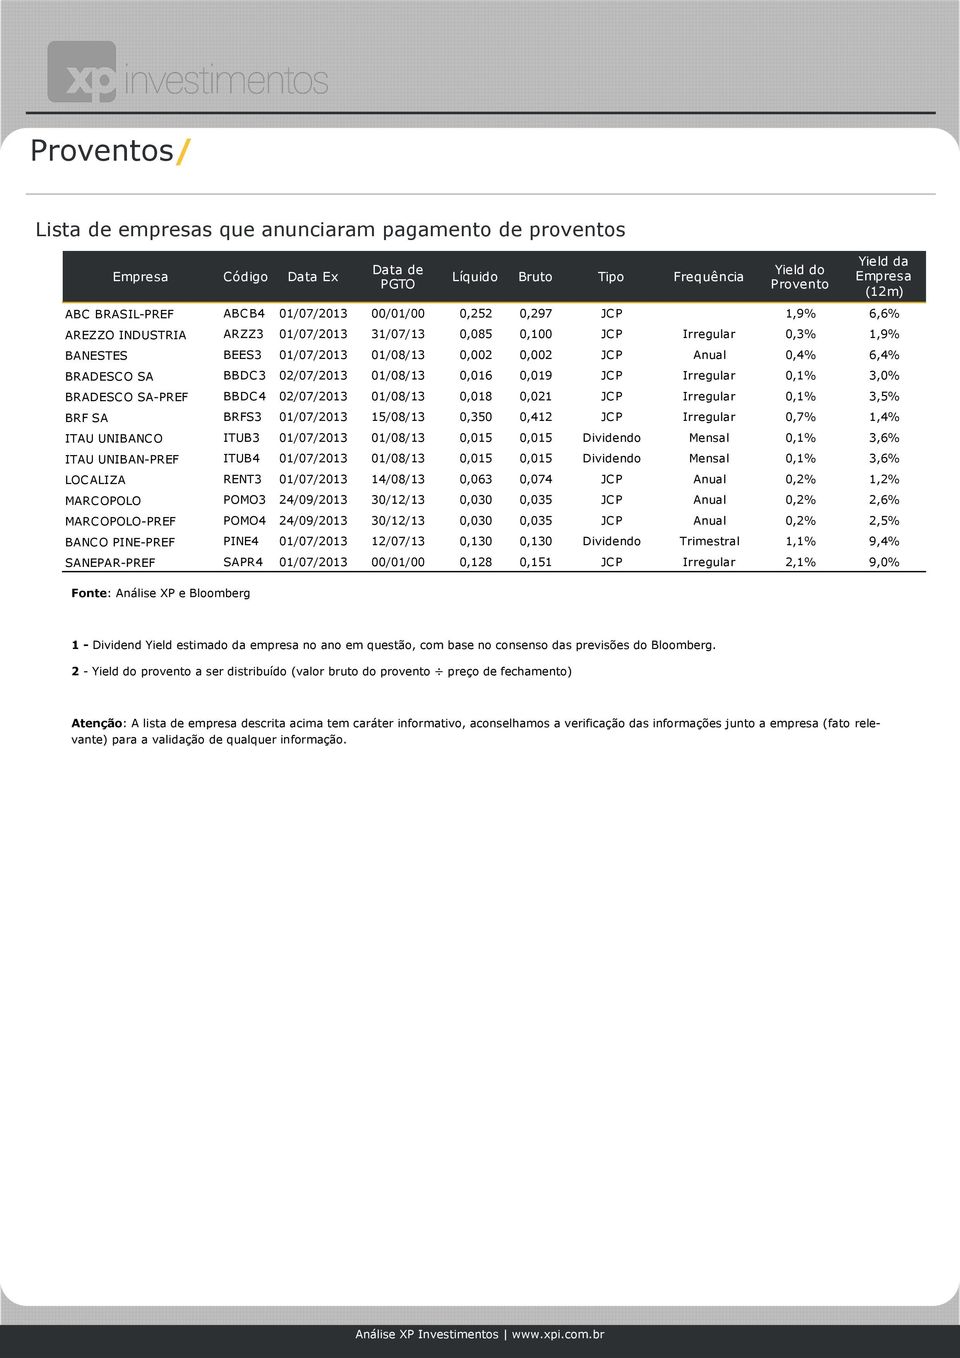 JCP Anual 0,4% 6,4% BRADESCO SA BBDC3 02/07/2013 01/08/13 0,016 0,019 JCP Irregular 0,1% 3,0% BRADESCO SA-PREF BBDC4 02/07/2013 01/08/13 0,018 0,021 JCP Irregular 0,1% 3,5% BRF SA BRFS3 01/07/2013